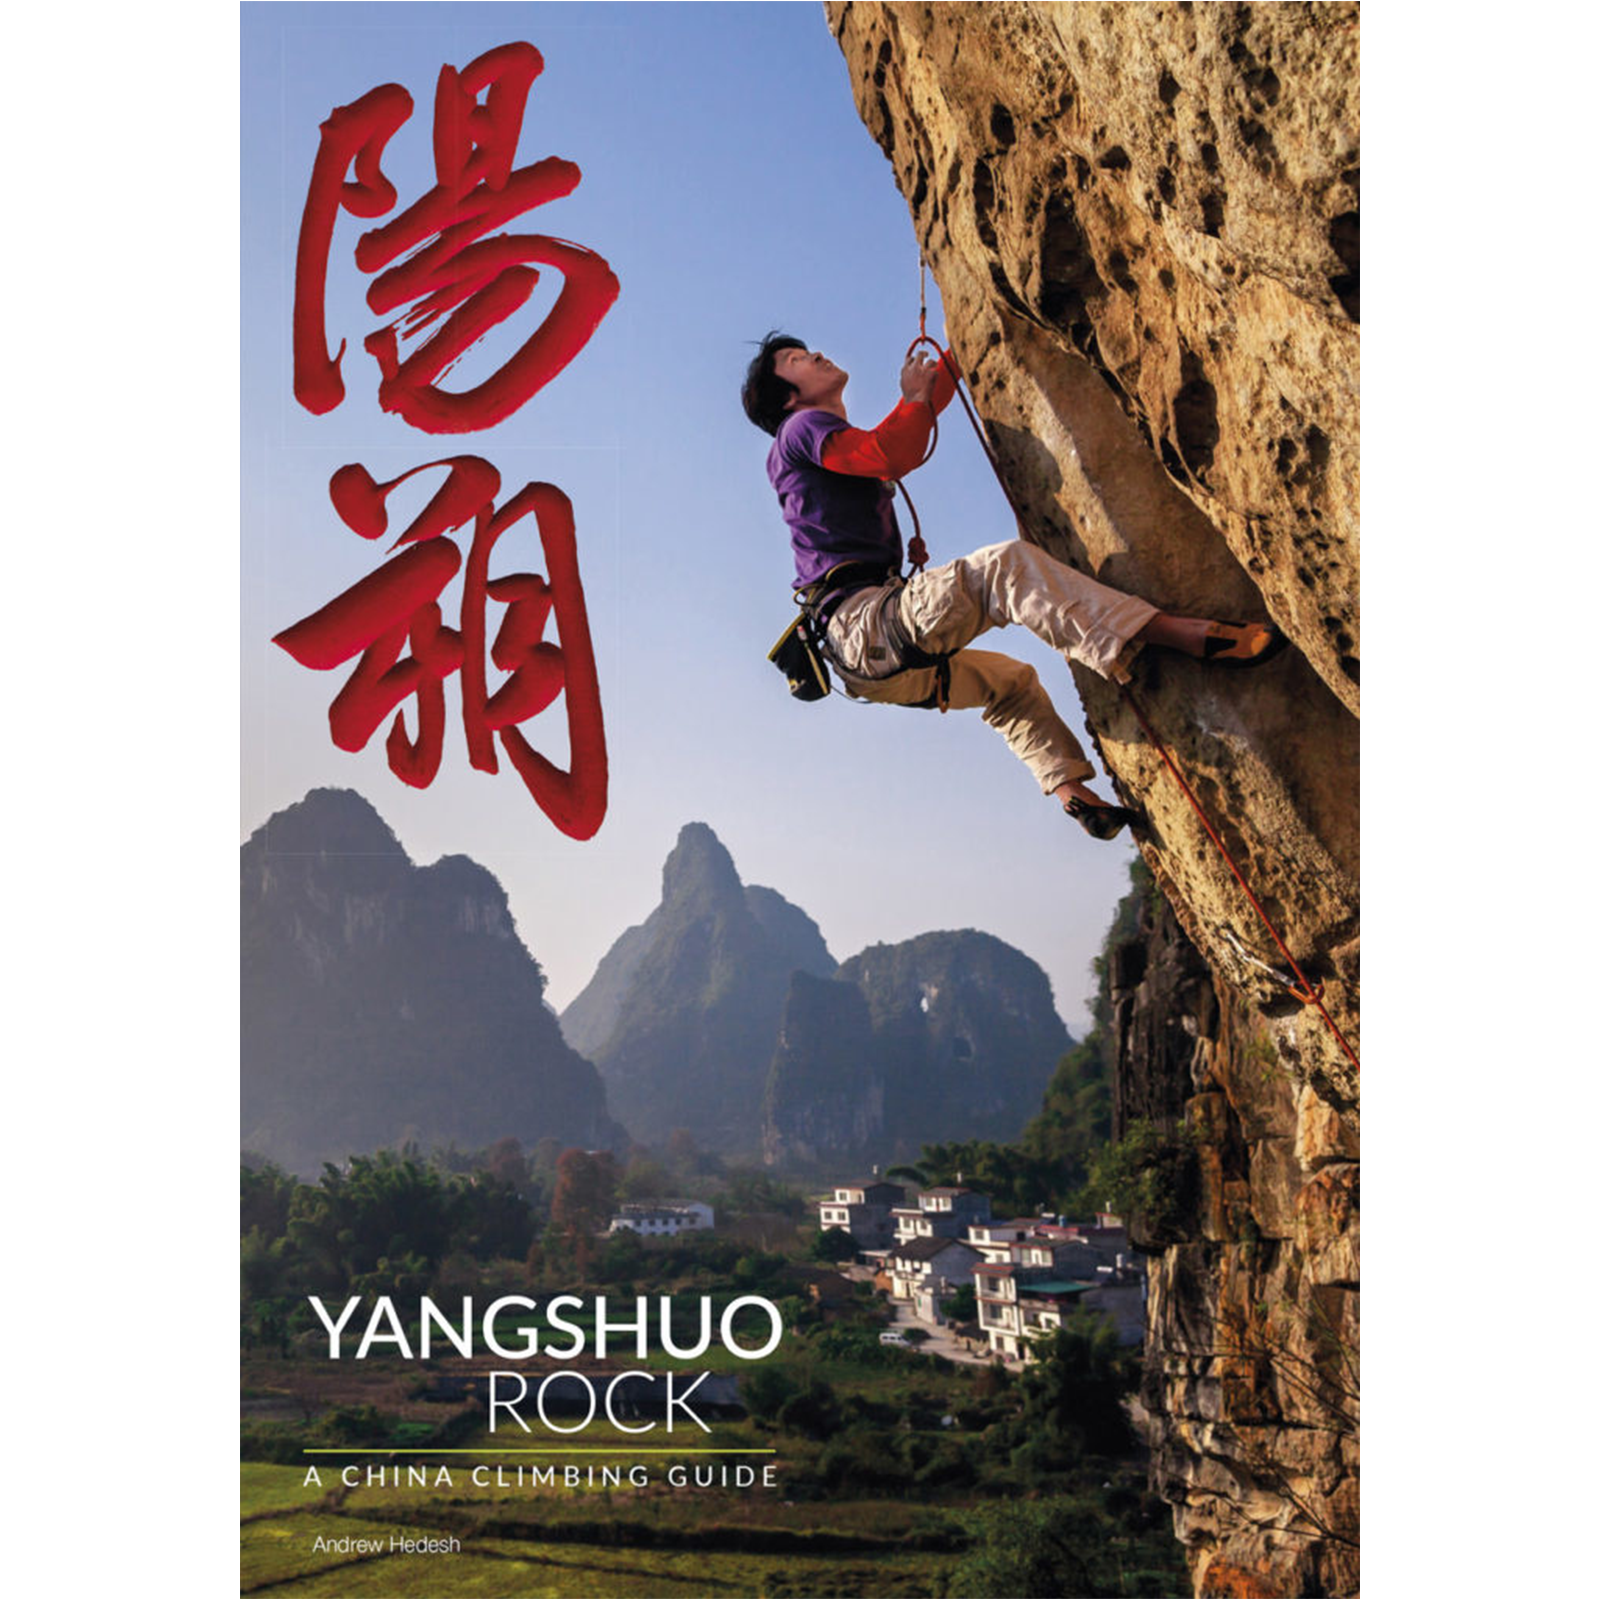 Yangshuo Rock : A China Climbing Guide